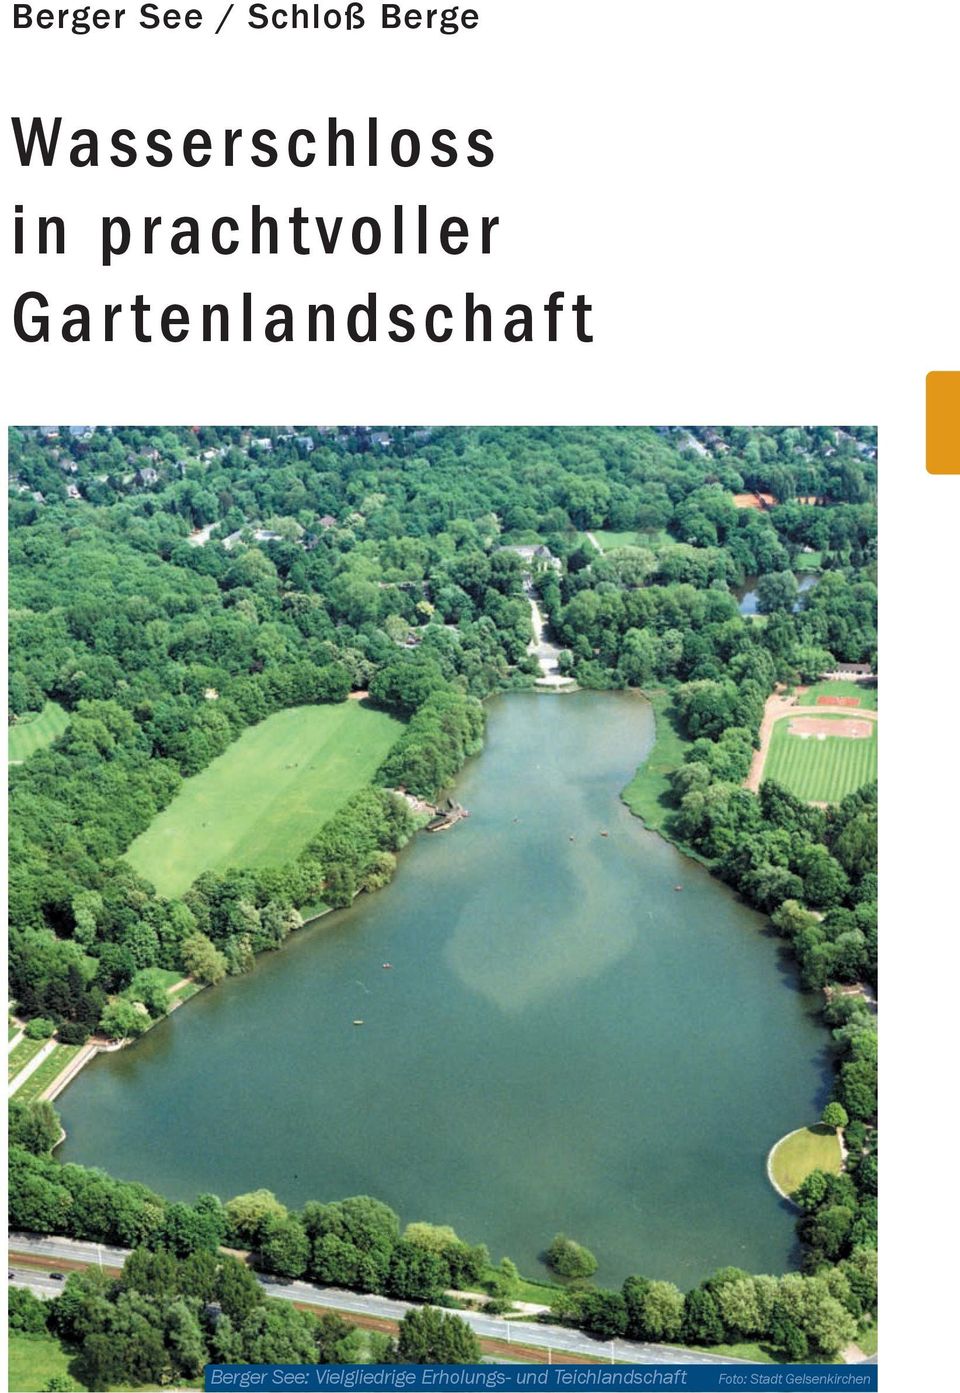 Wie tief ist der Berger See in Gelsenkirchen?